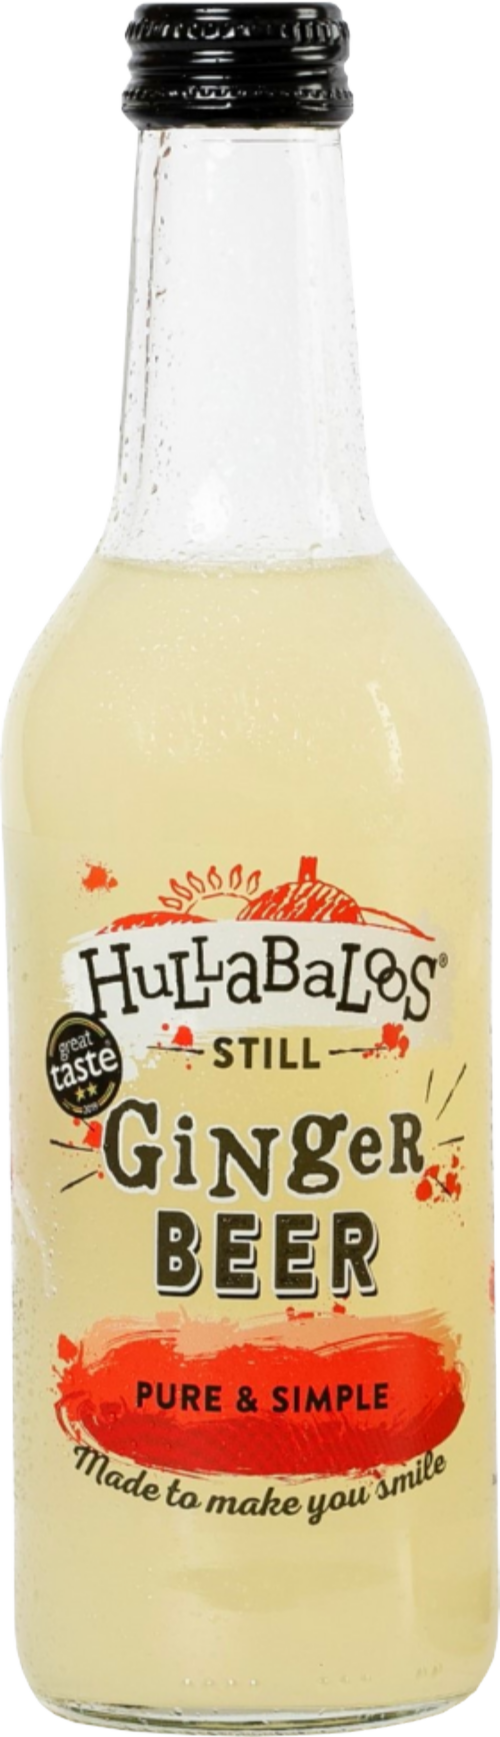 HULLABALOOS Still Ginger Beer 330ml